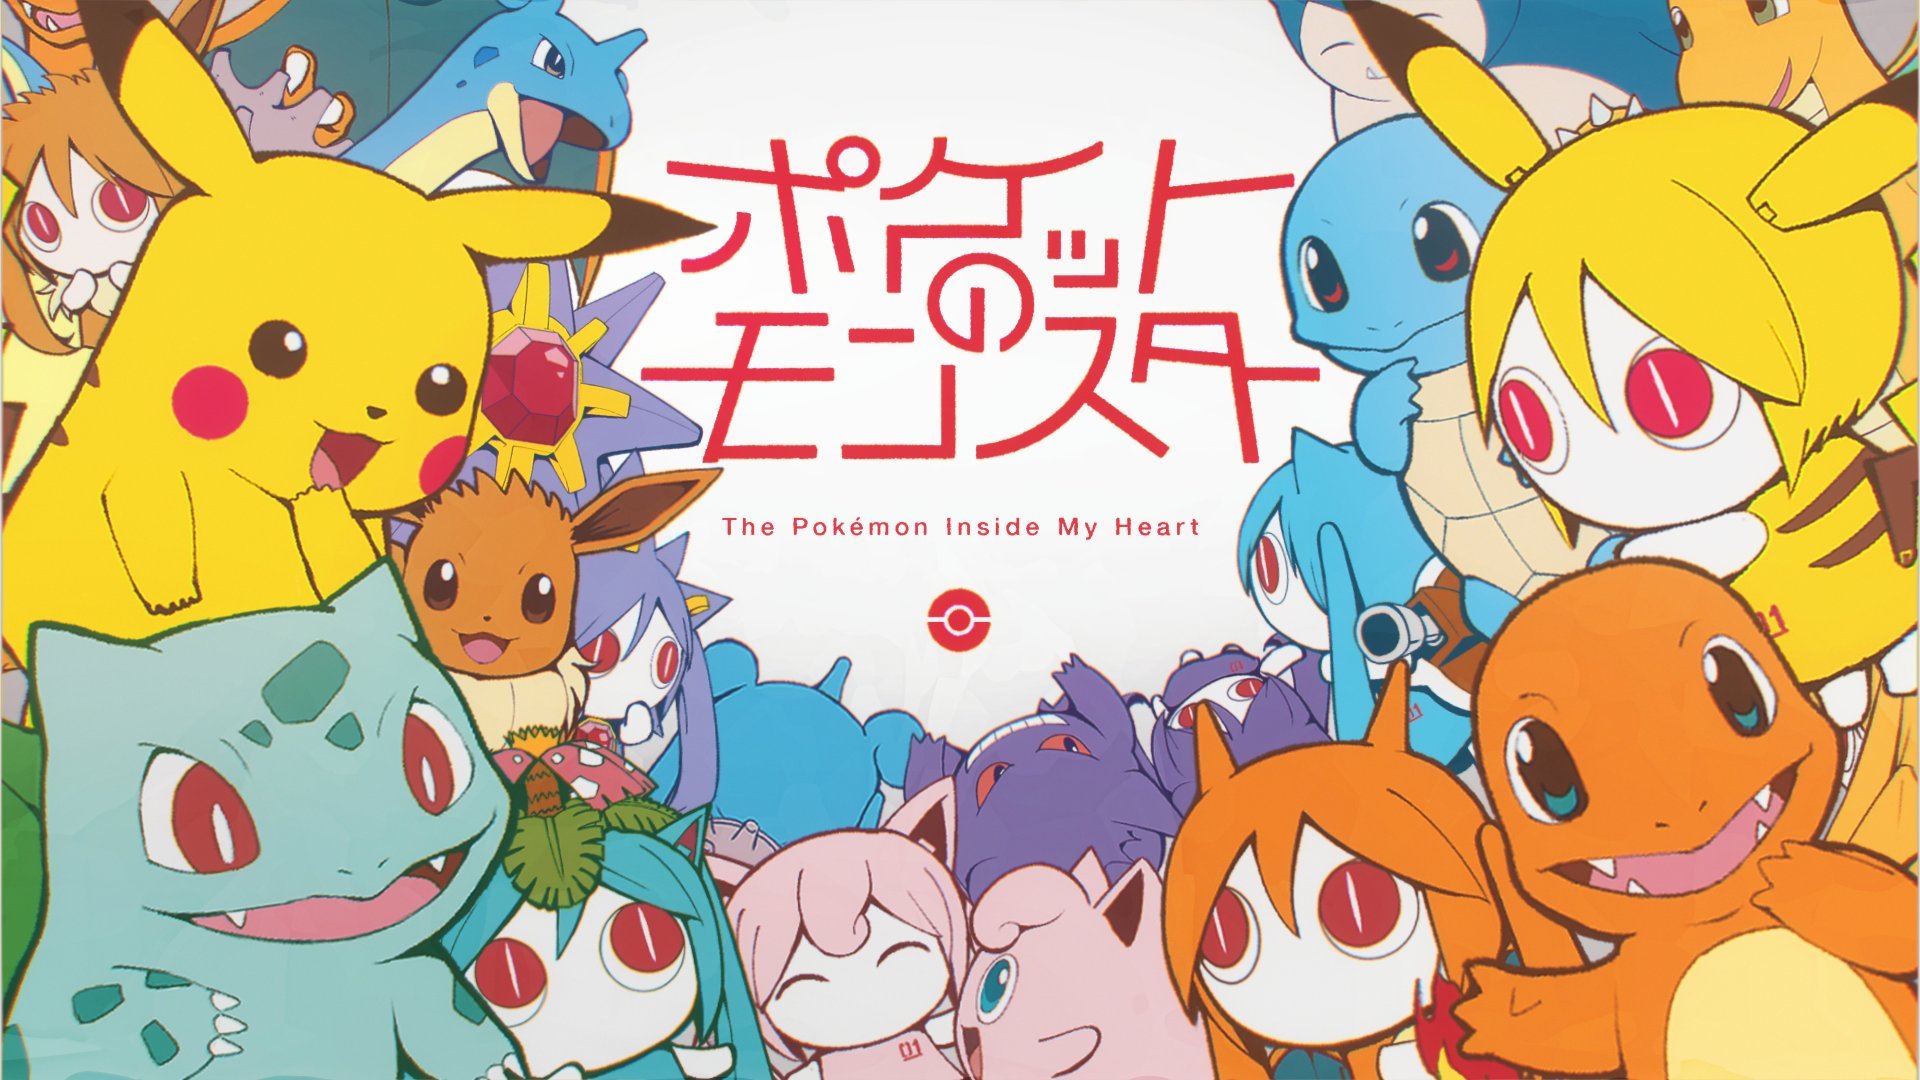 Pokémon Temporadas 1 á 10 Completas e Dubladas em DVD